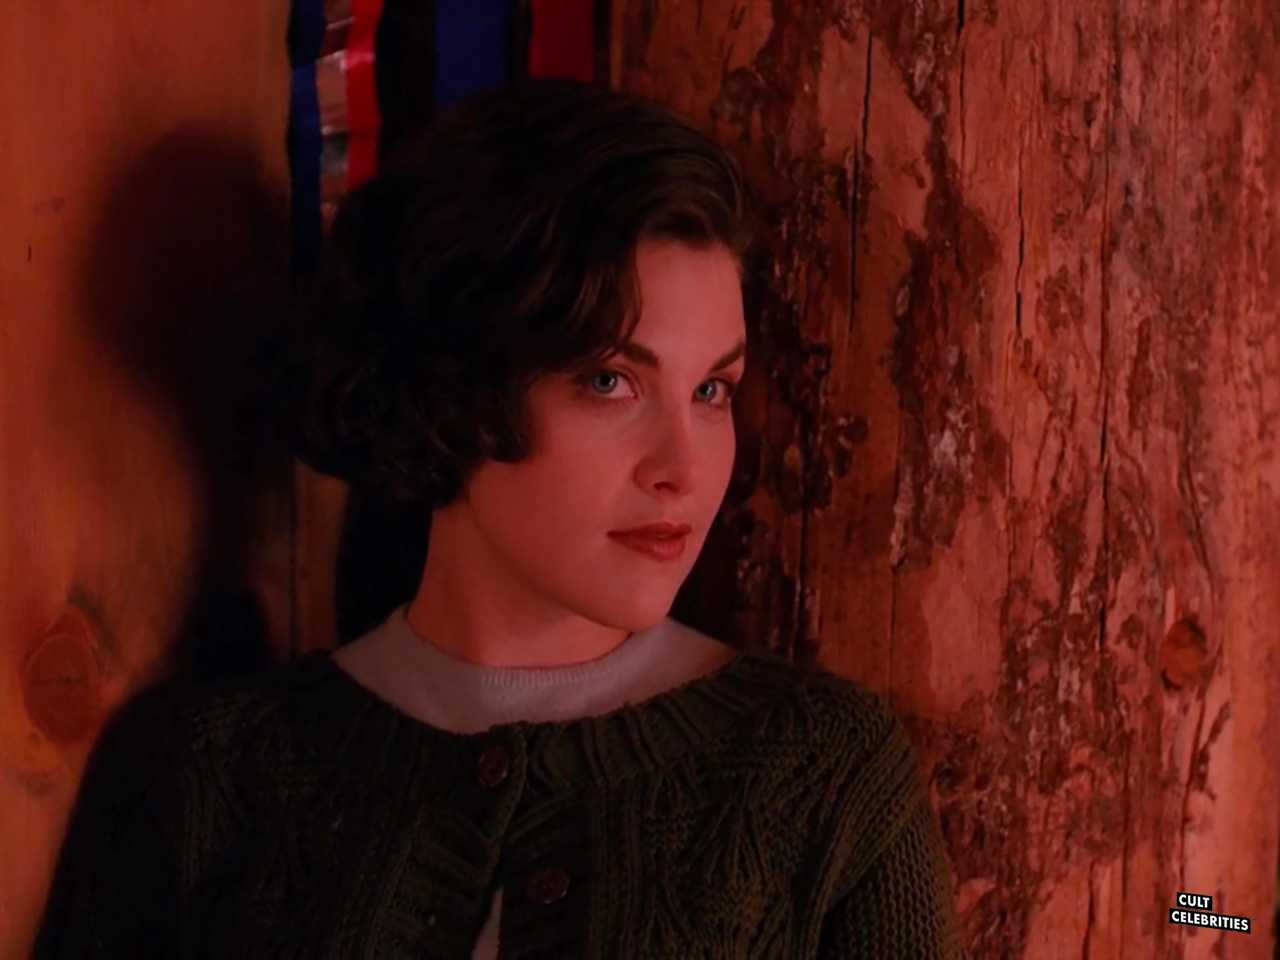 Sherilyn Fenn in Twin Peaks (1990)